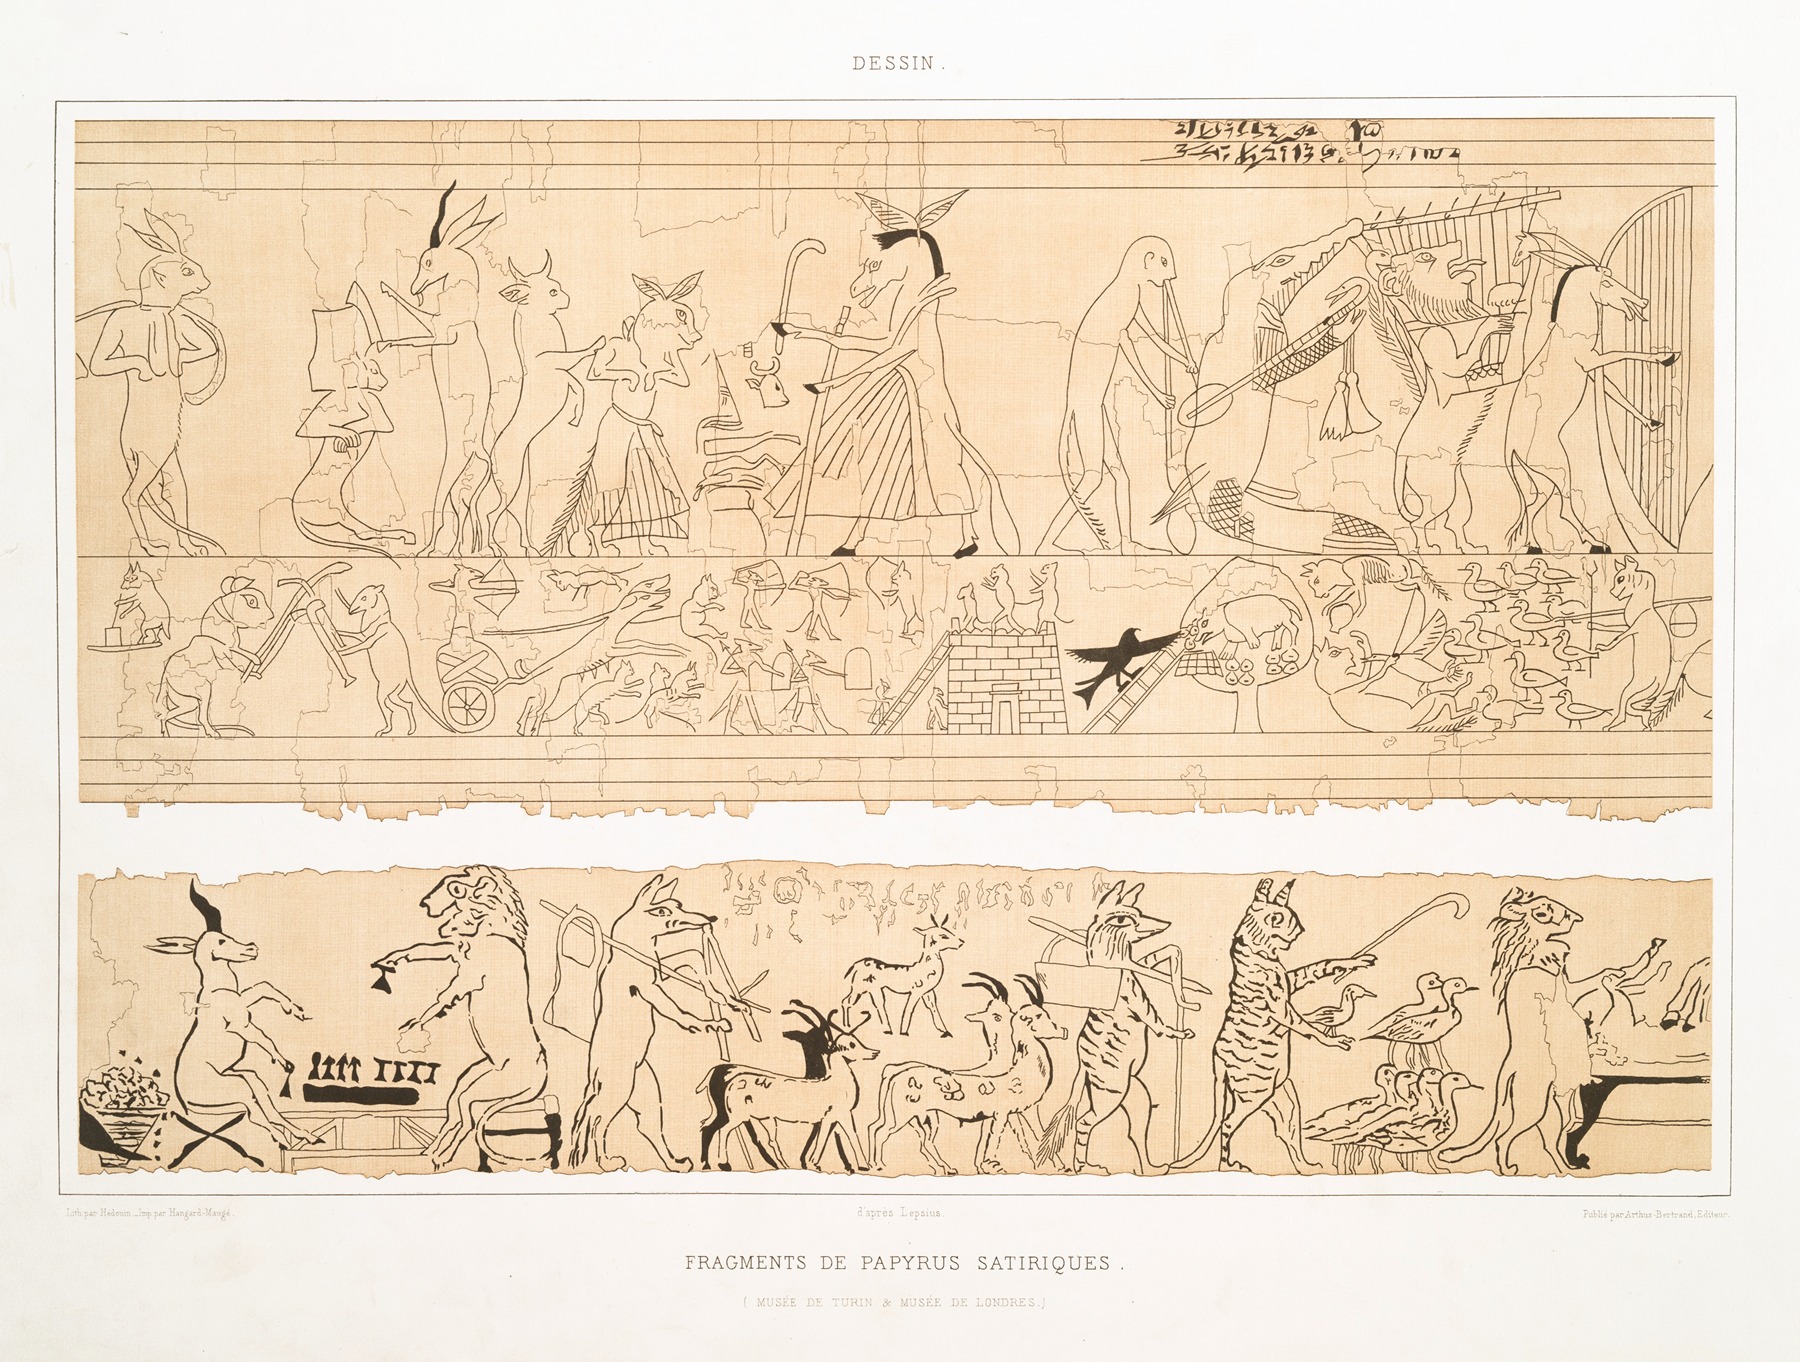 Émile Prisse d'Avennes - Dessin; fragments de papyrus satiriques (Musée de Turin & Musée de Londres)